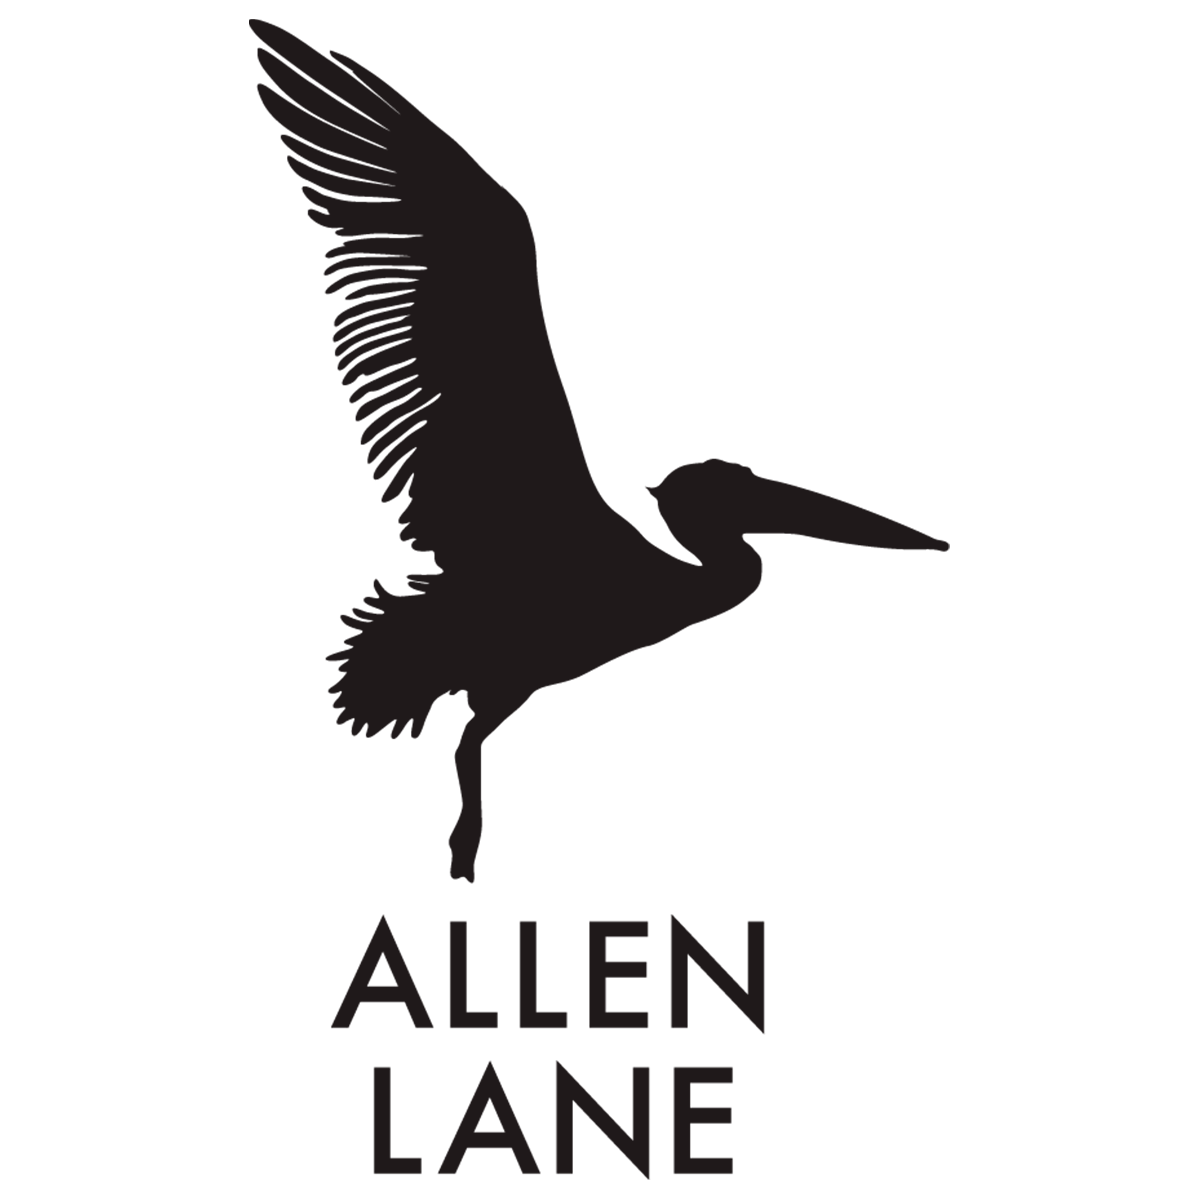 Allen Lane